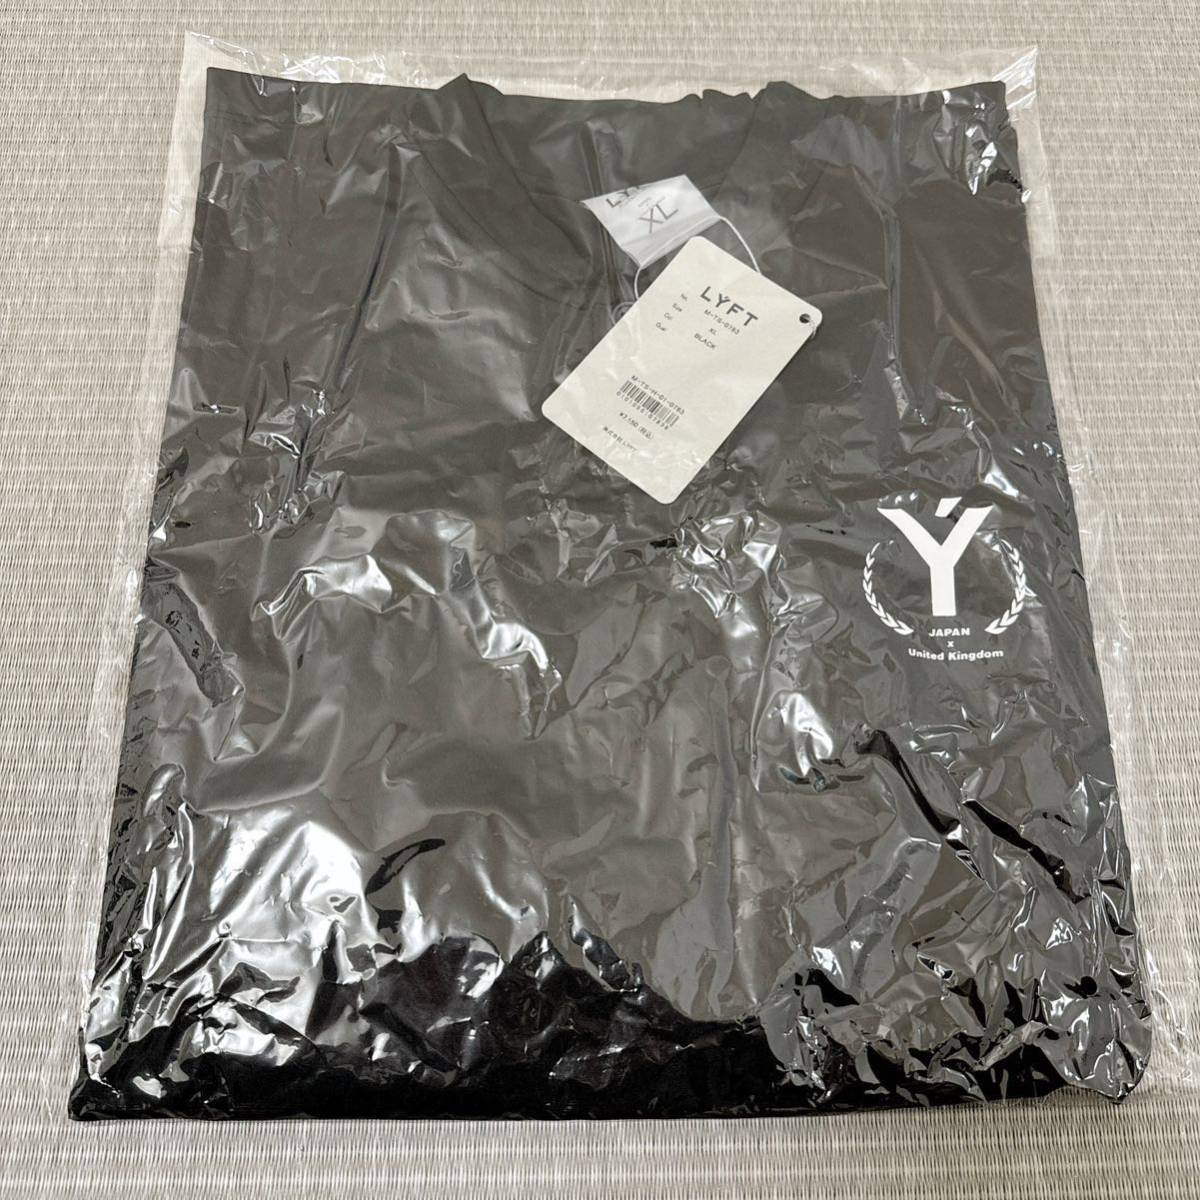 | полная распродажа товар | LYFT подъёмник футболка LAUREL Y STRETCH BUTTON NECK T-SHIRT BLACK тренировка одежда 